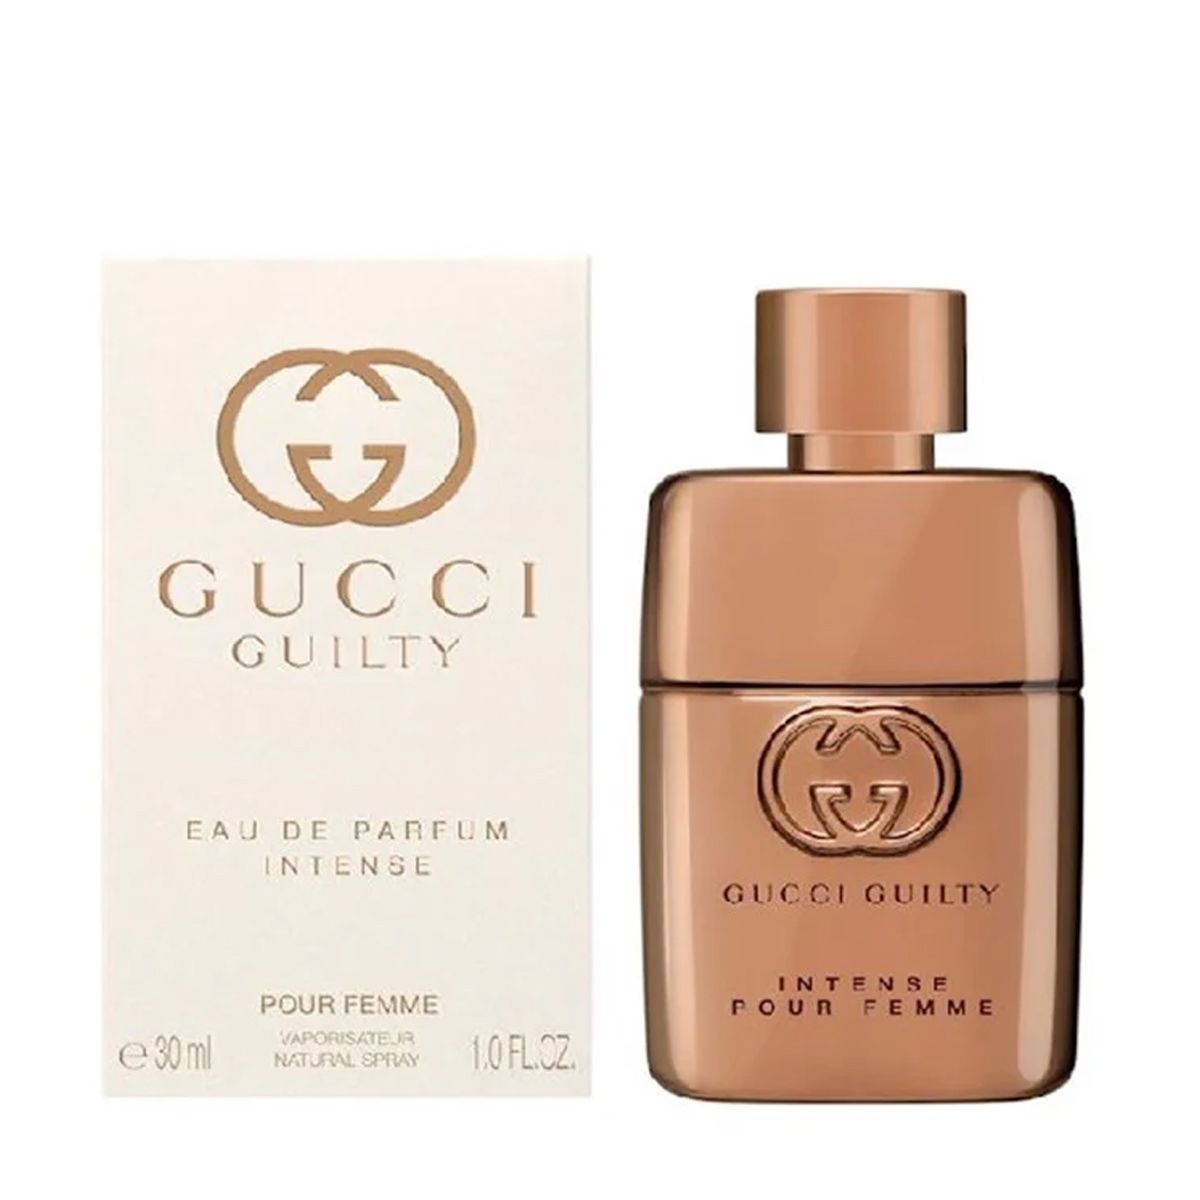  Gucci Guilty Pour Femme Eau de Parfum Intense 